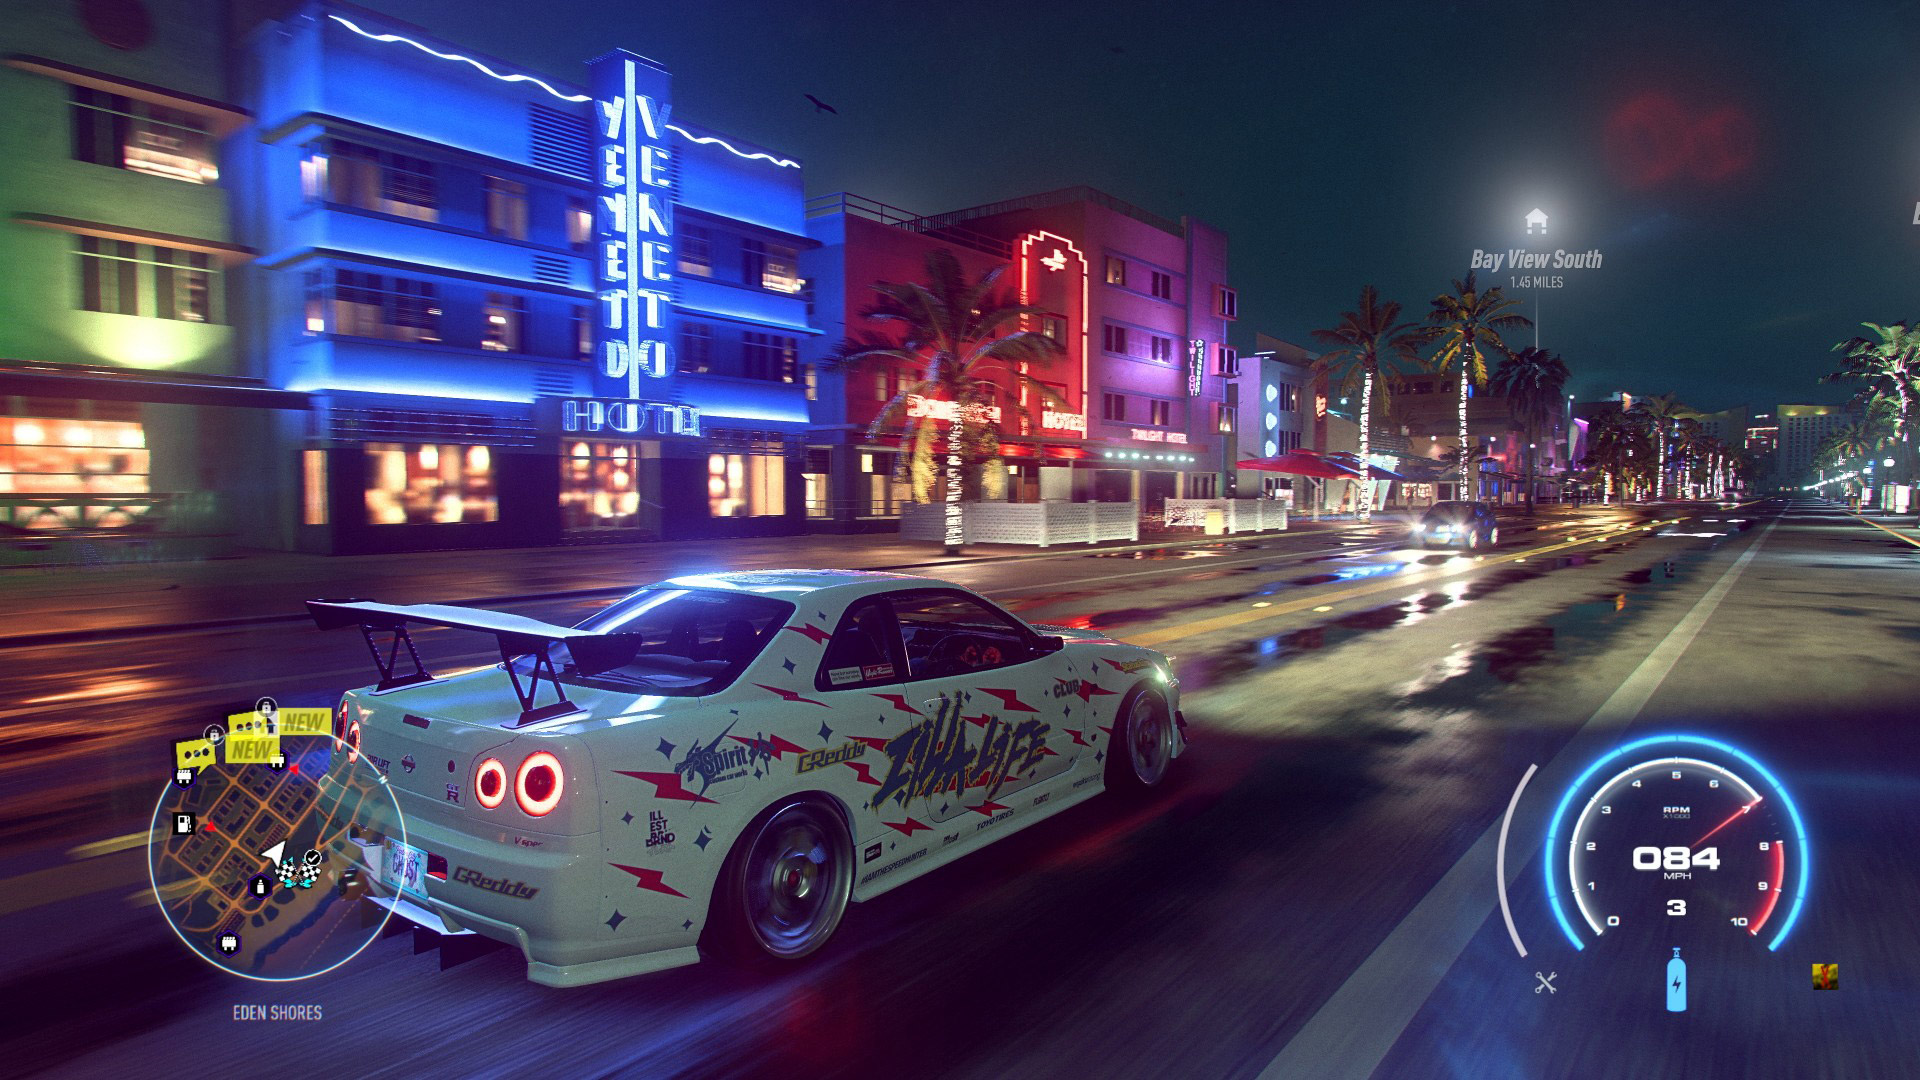 سری بازی Need For Speed دوباره توسط استودیو Criterion ساخته خواهد شد